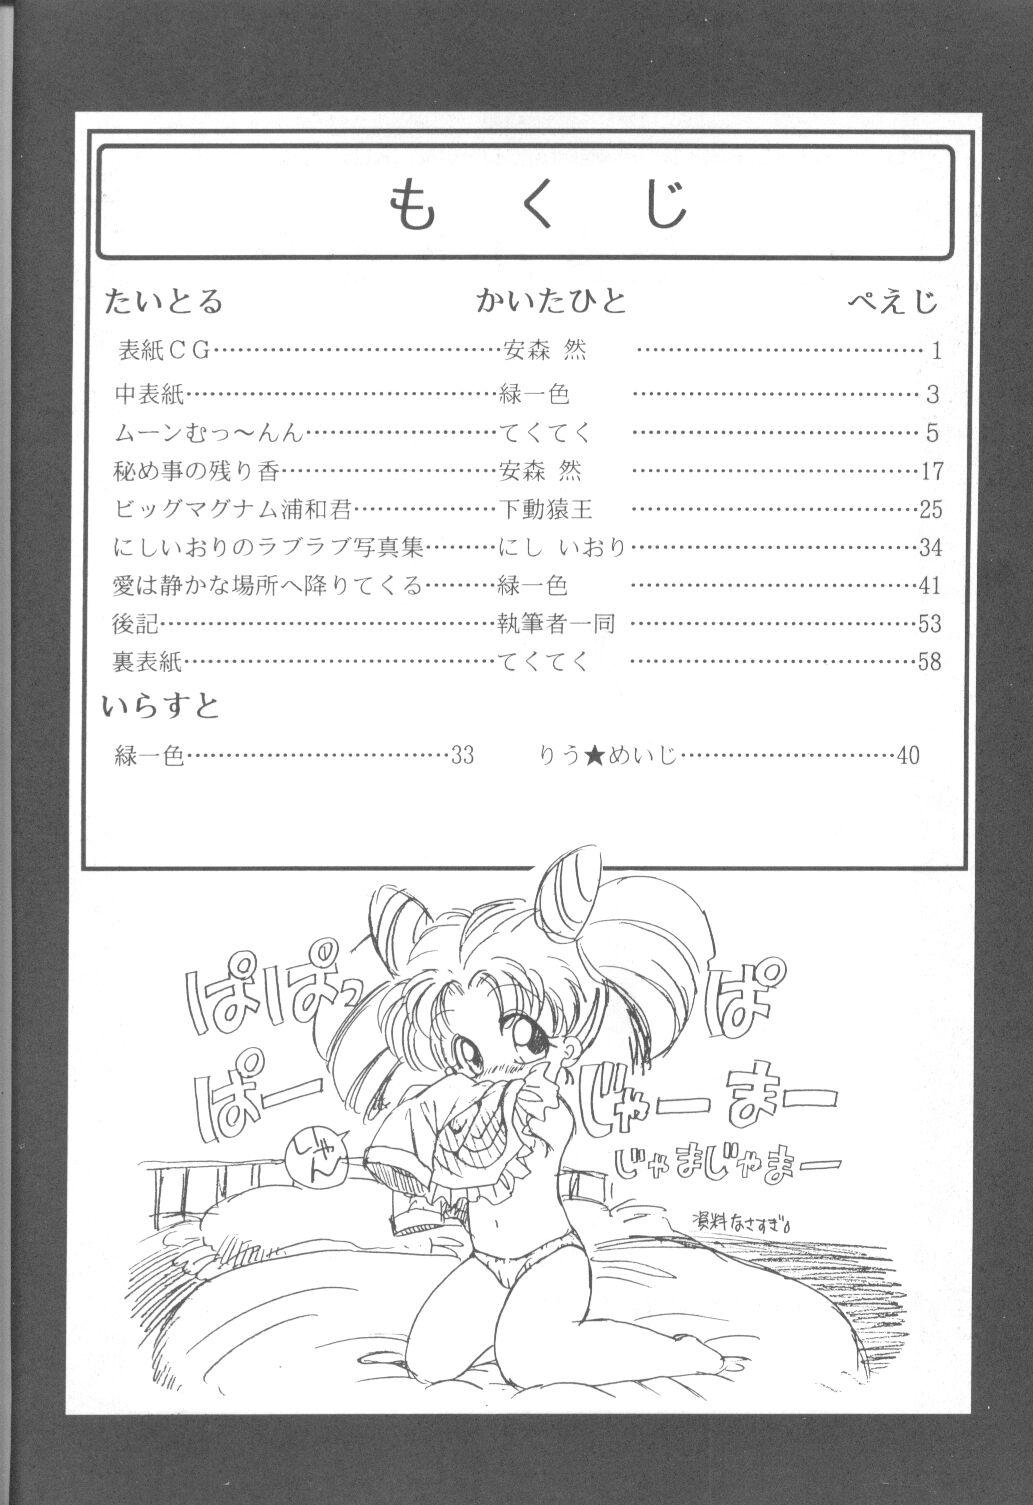 Polla Tabeta Kigasuru 9 - Sailor moon Gay Public - Page 3